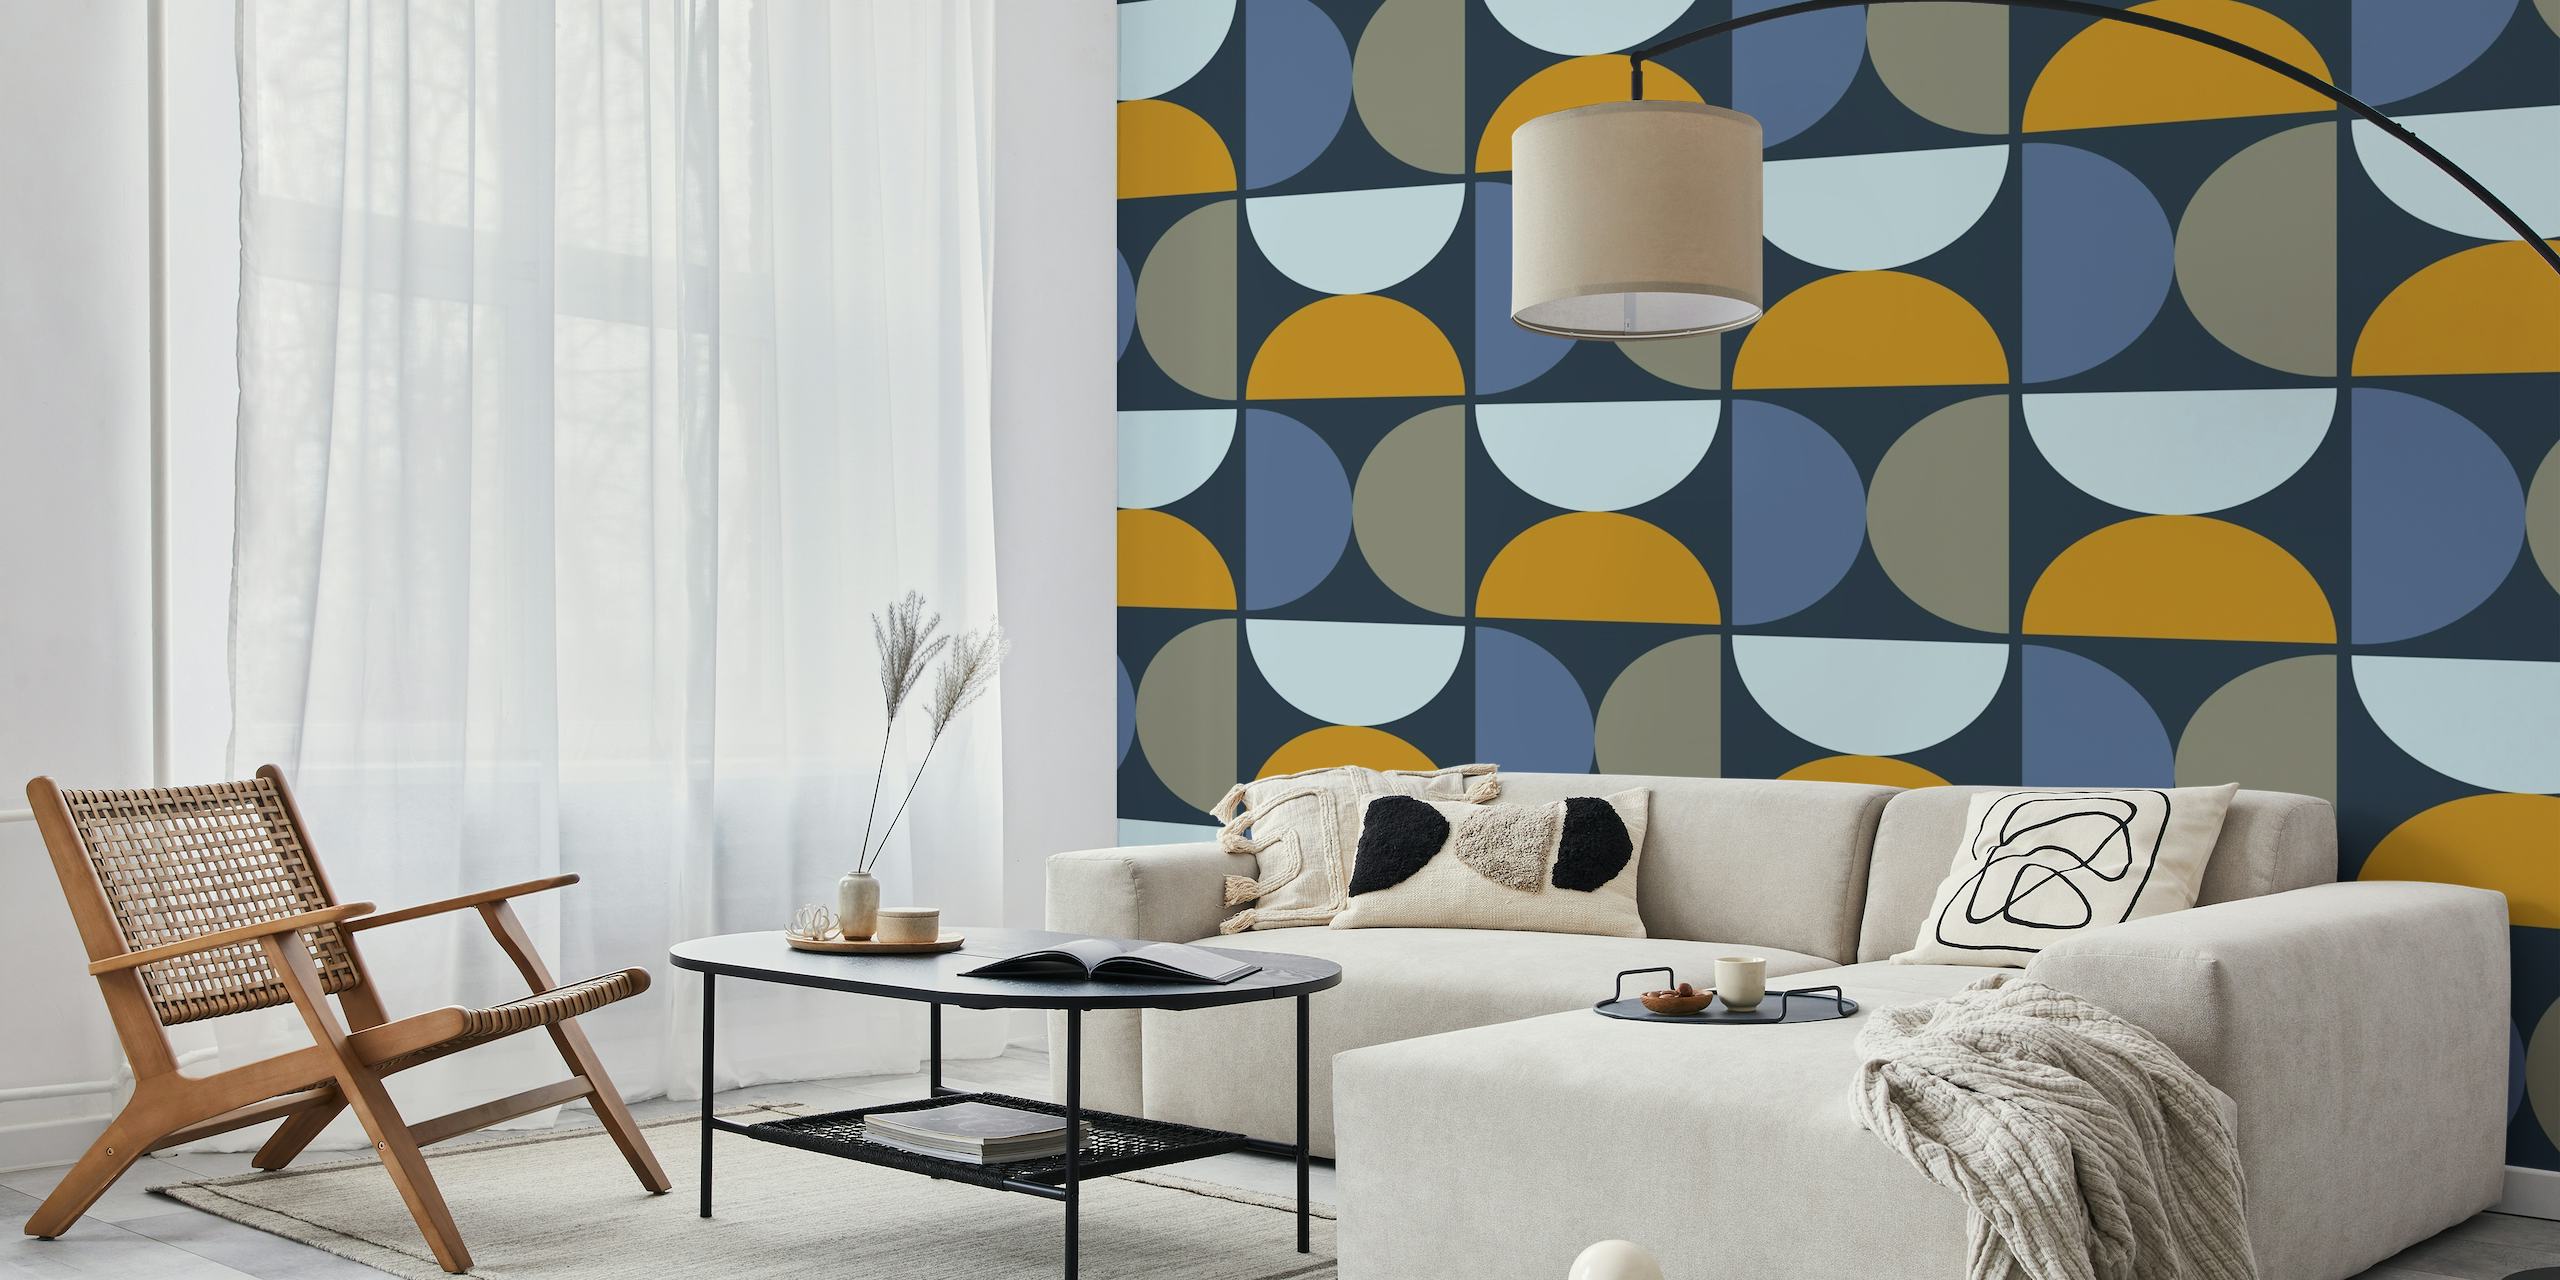 Abstracte halfronde patronen in blauwe, grijze en bruine tinten met de titel 'Semicircles 1 - Bossa Nova' voor muurschilderingdecoratie.